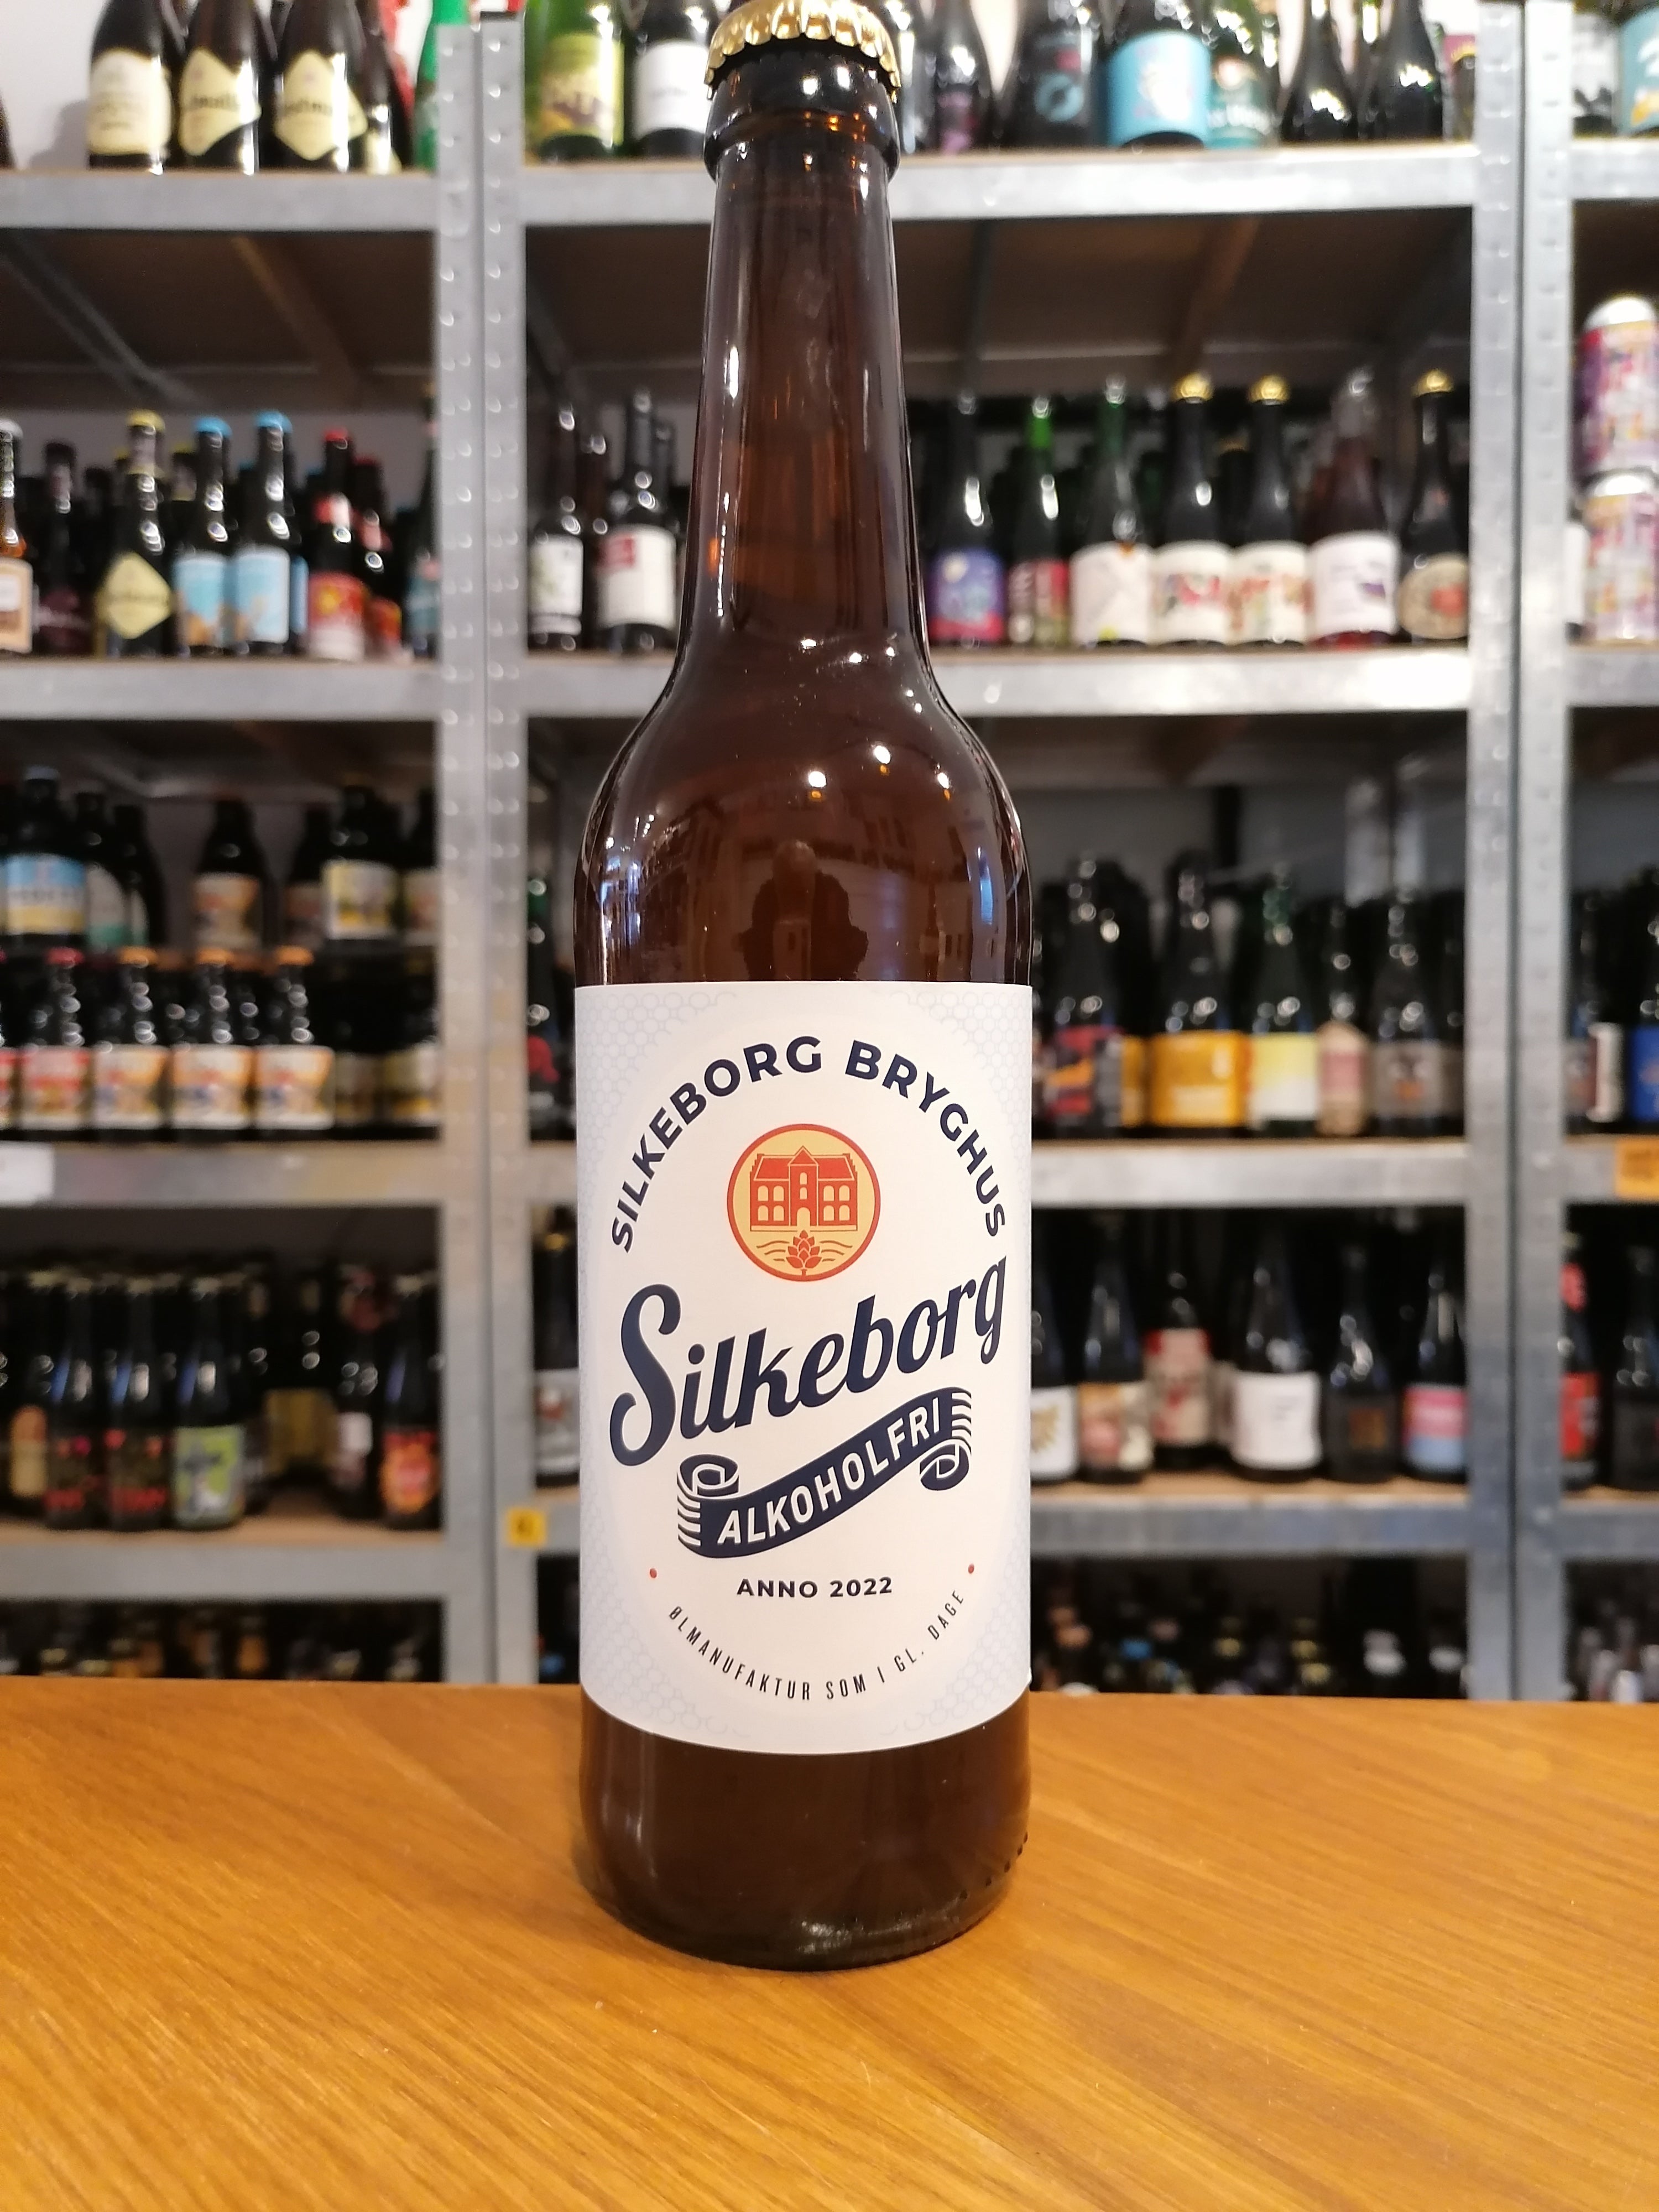 Brug Silkeborg bryghus - Alkoholfri- 50 cl. - 0,5% til en forbedret oplevelse